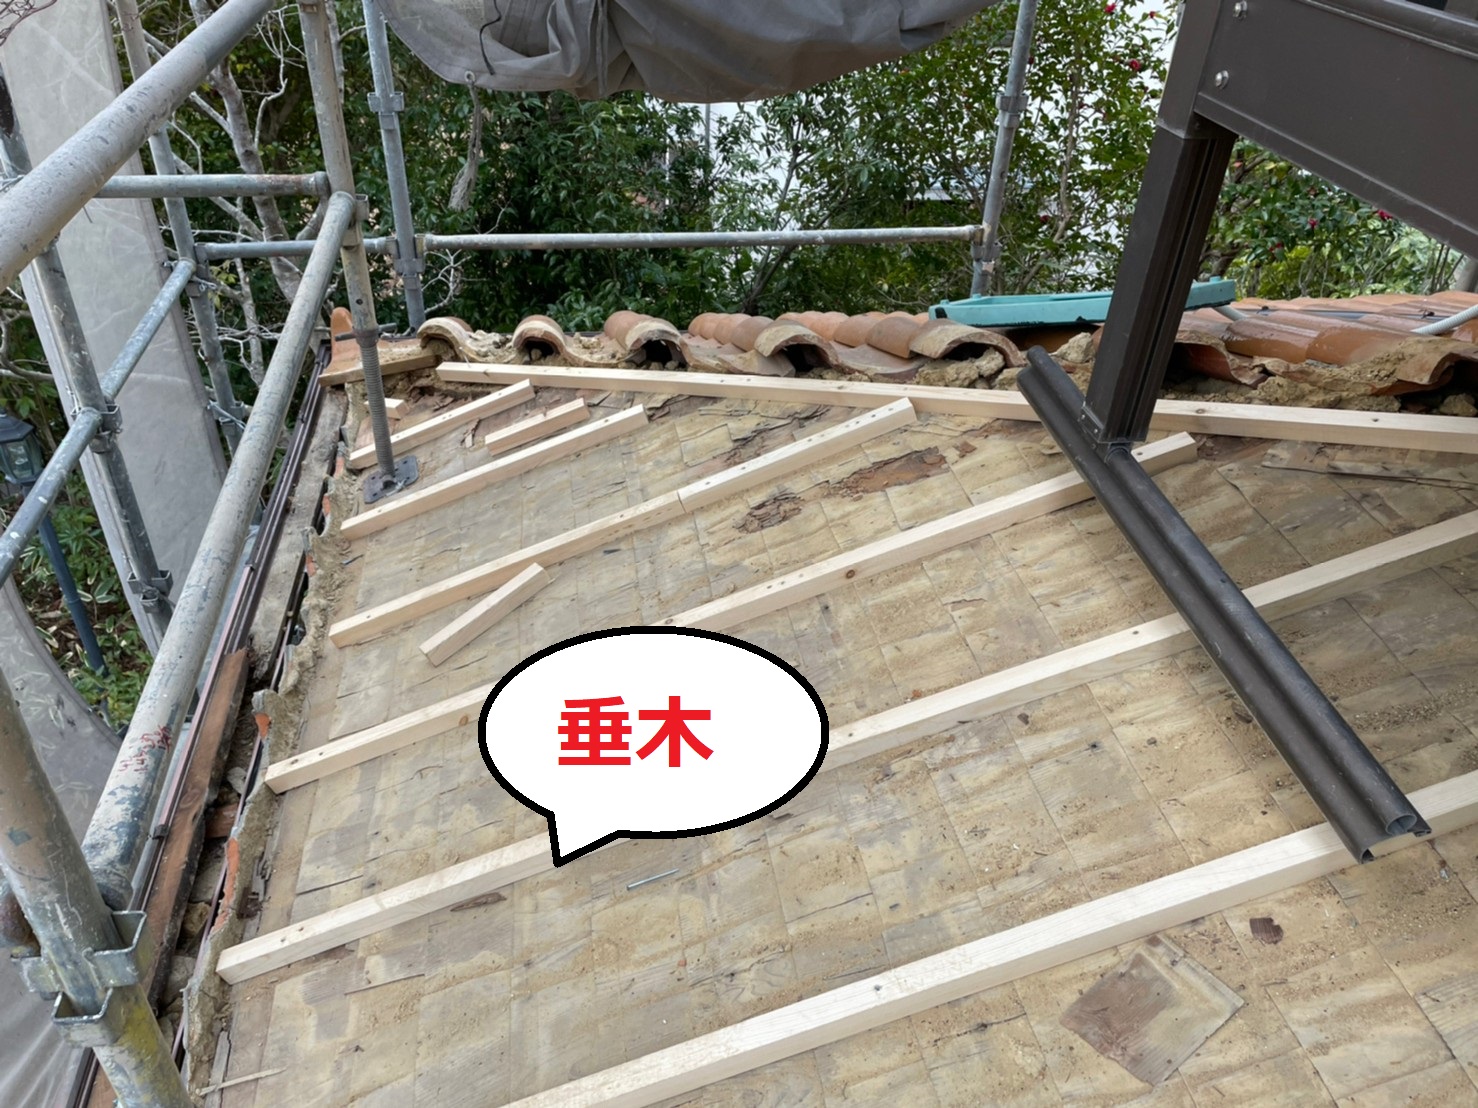 雨漏り修繕の屋根部分葺き替えで垂木取り付け